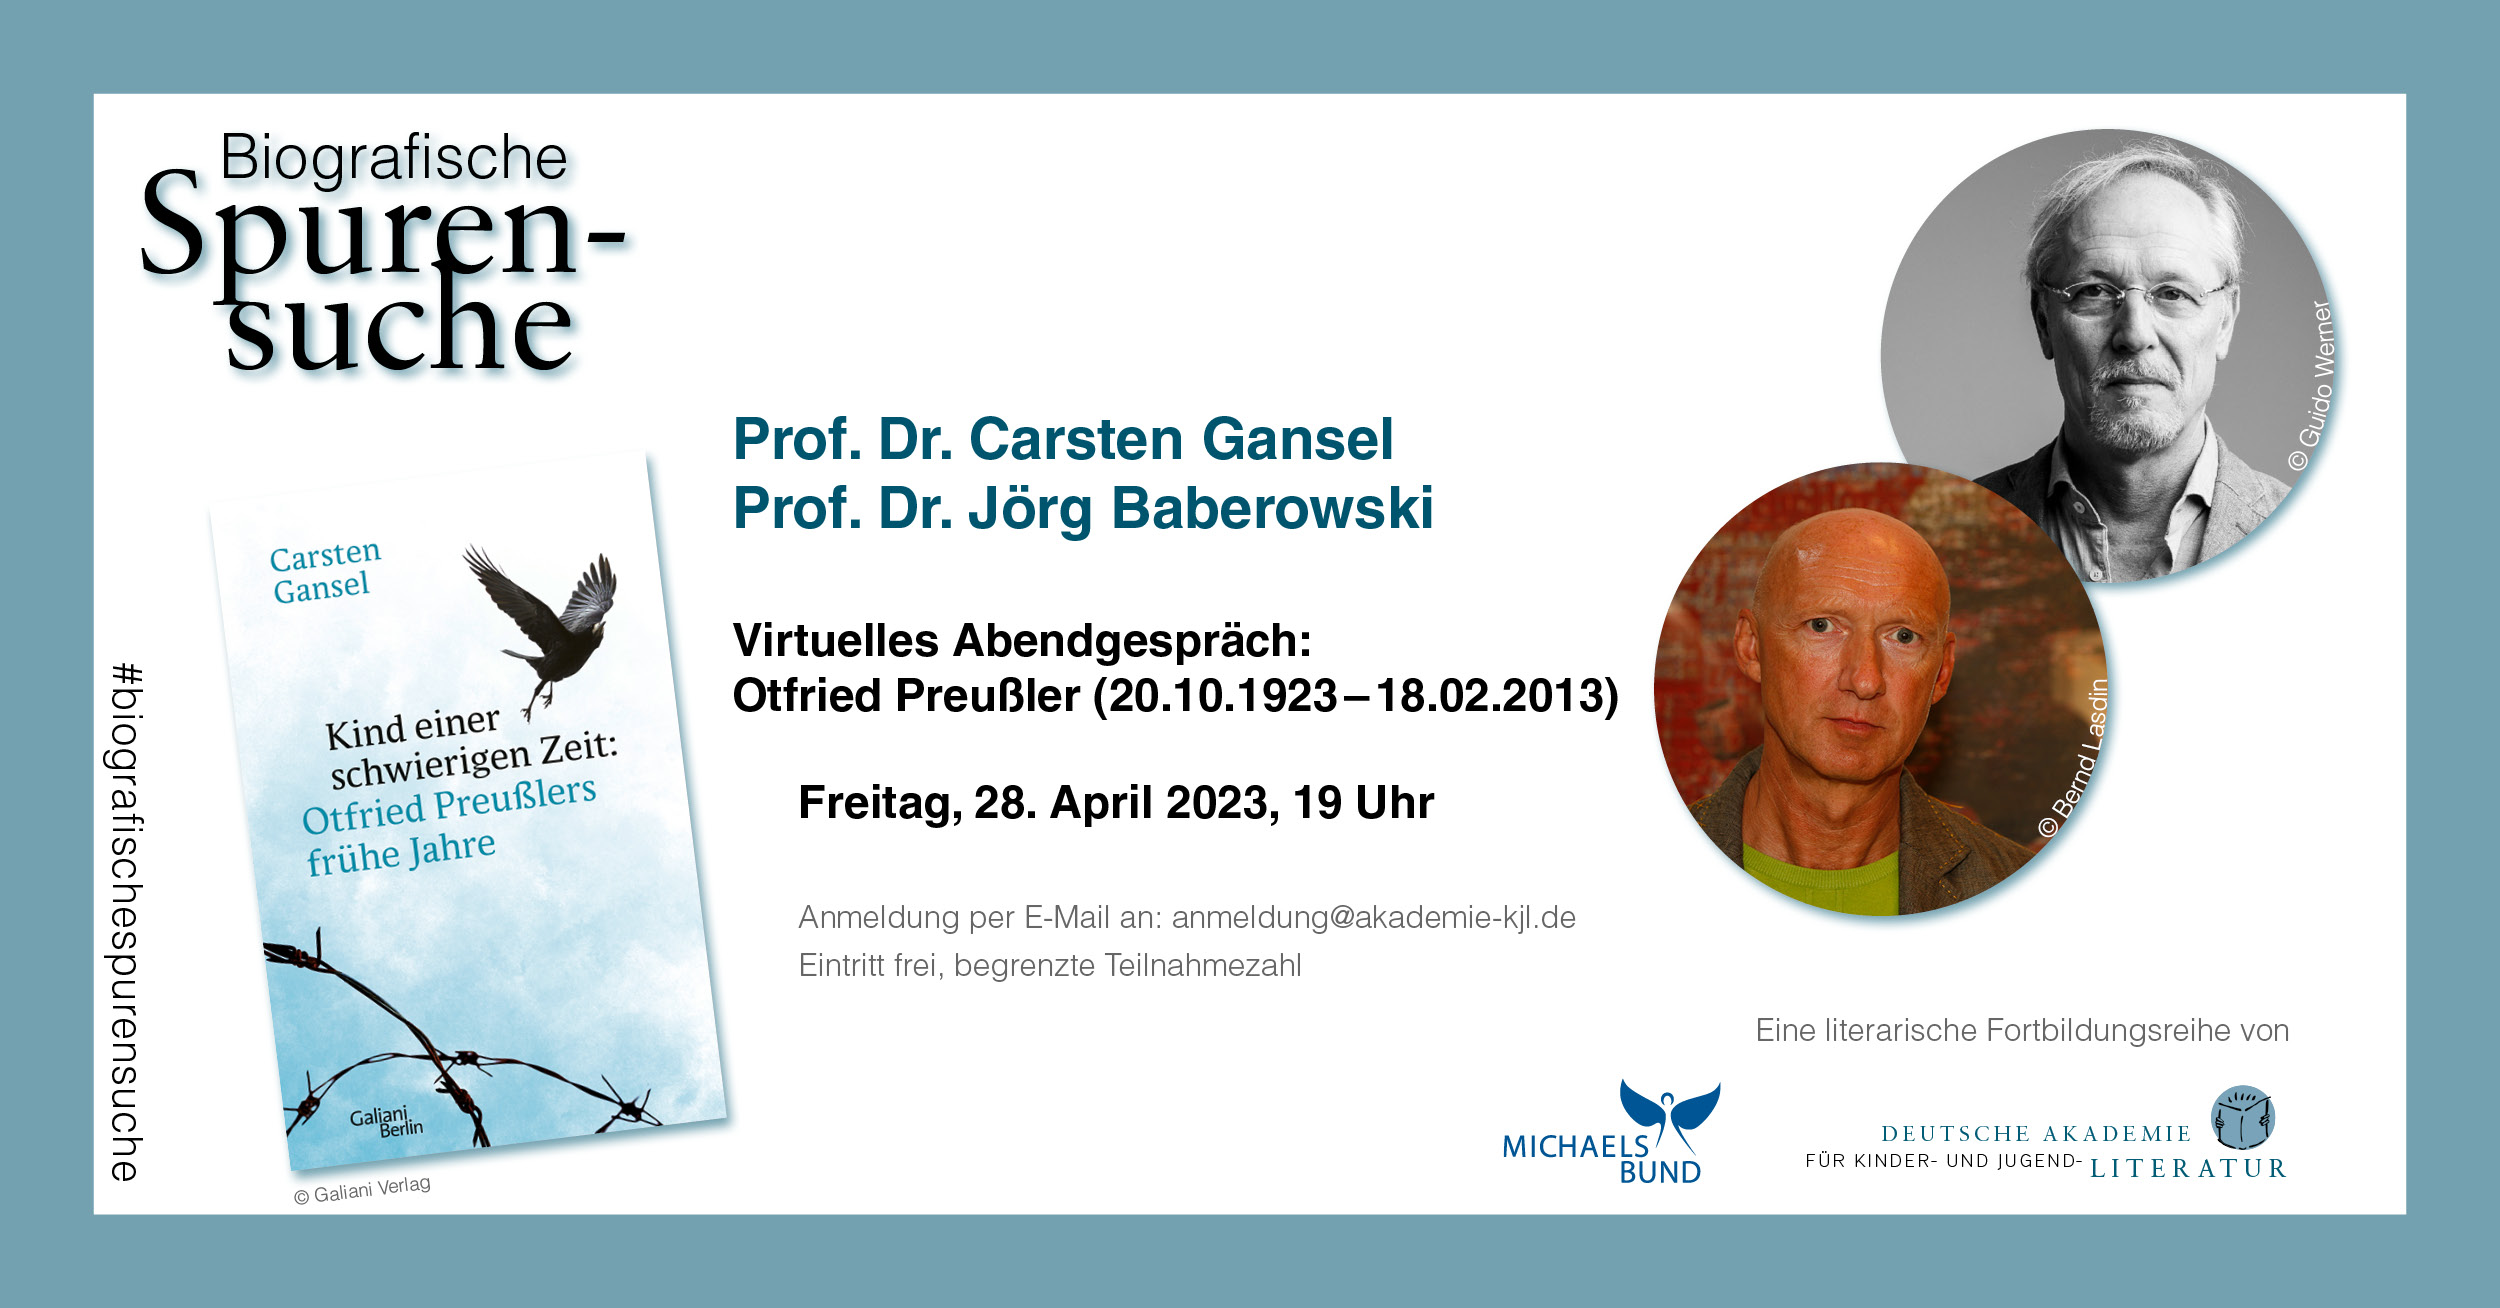 Biografische Spurensuche: Otfried Preußler (1923-2012) | Virtuelles Abendgespräch mit Carsten Gansel und Jörg Baberowski (28.04.2023)